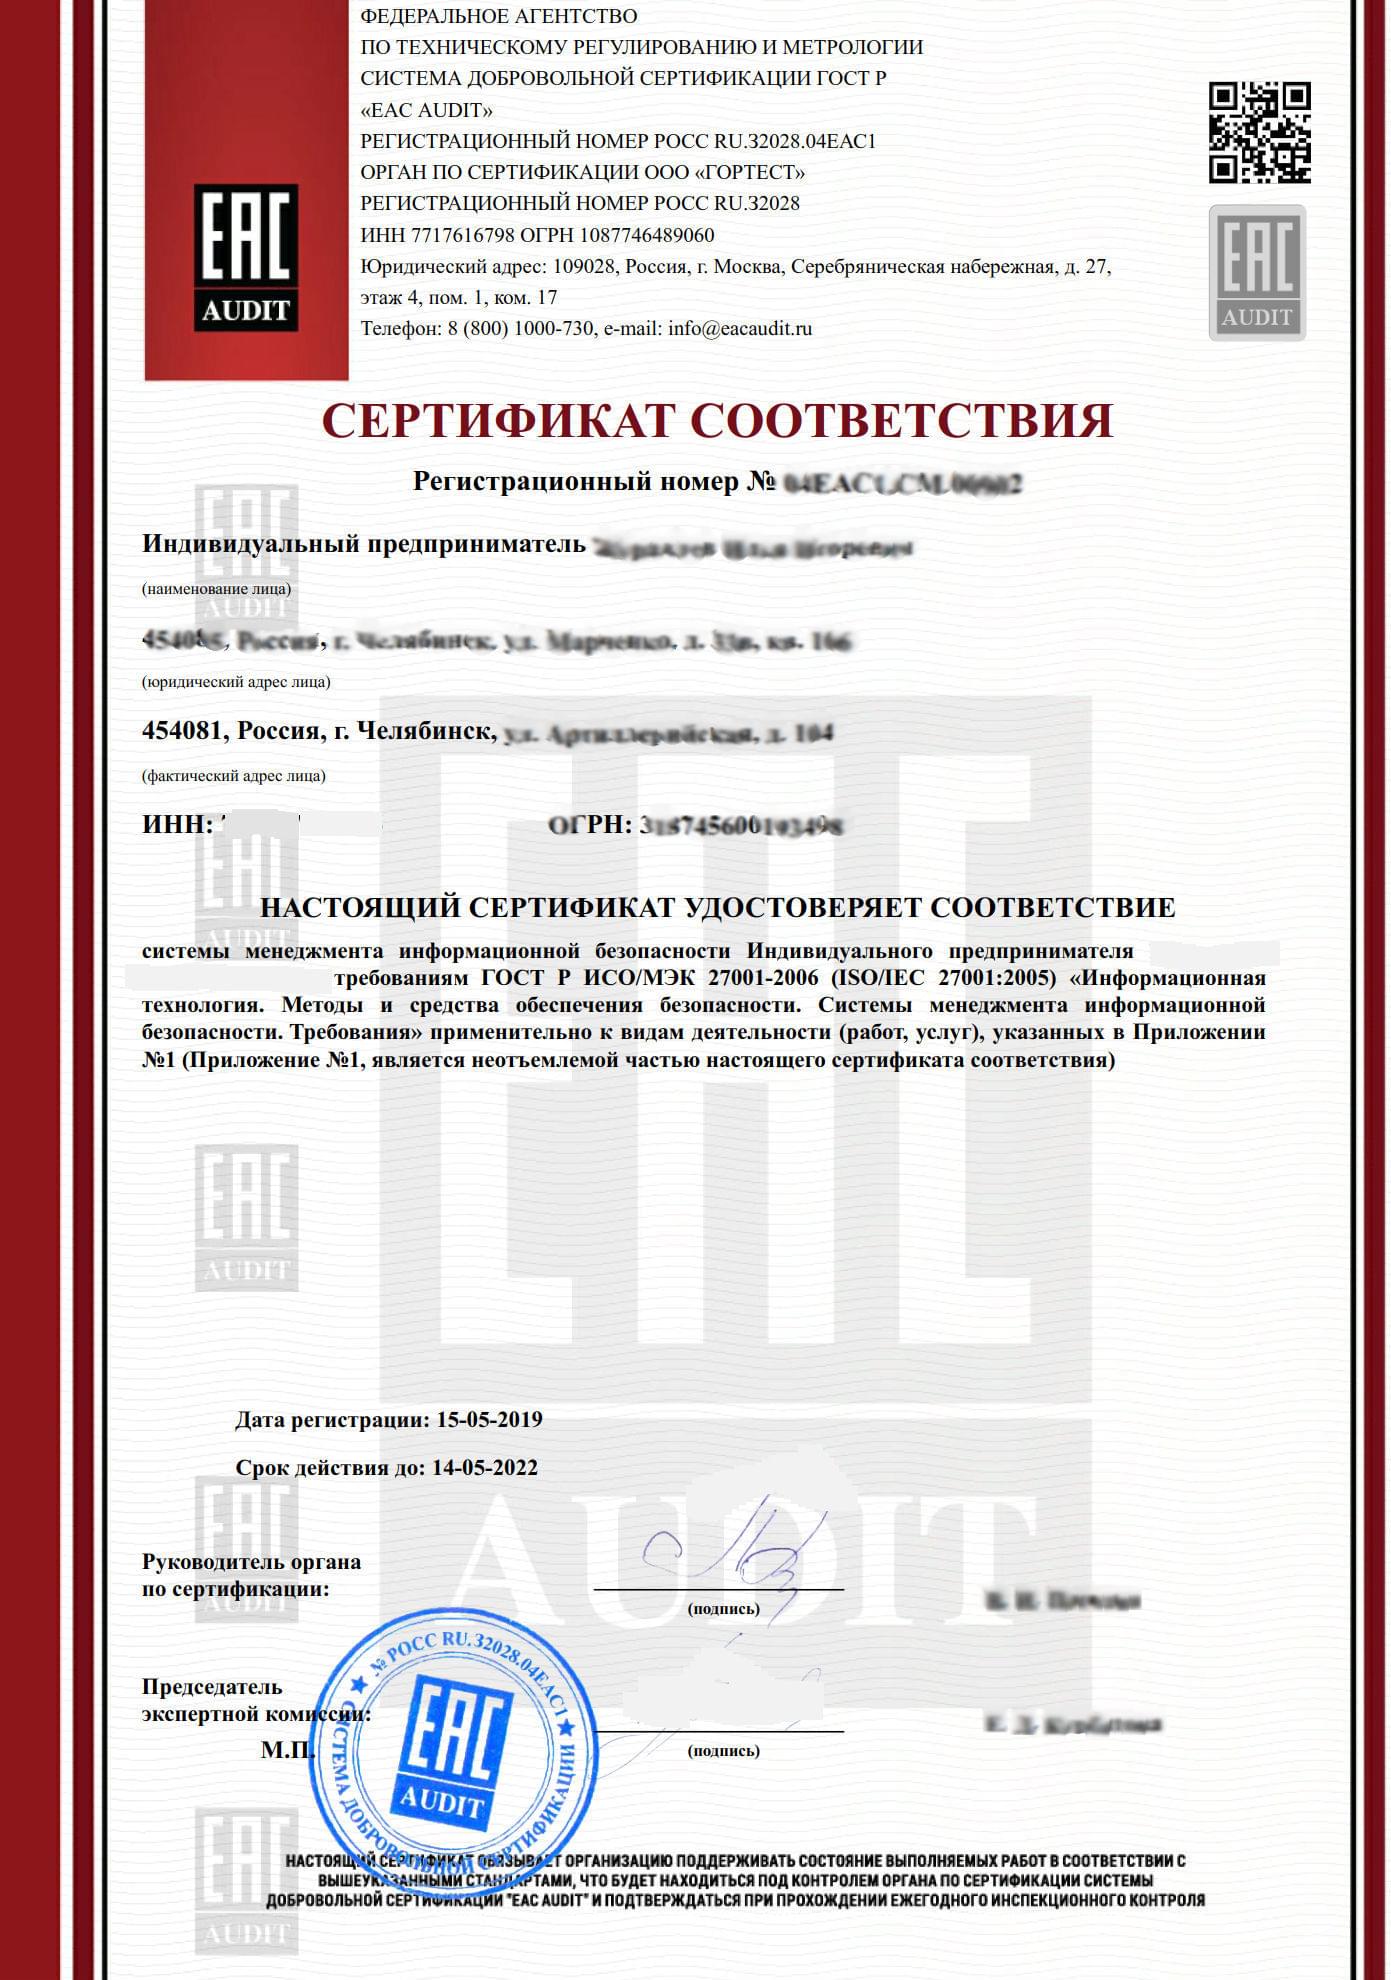 Сертификат ГОСТ Р ИСО/МЭК 27001